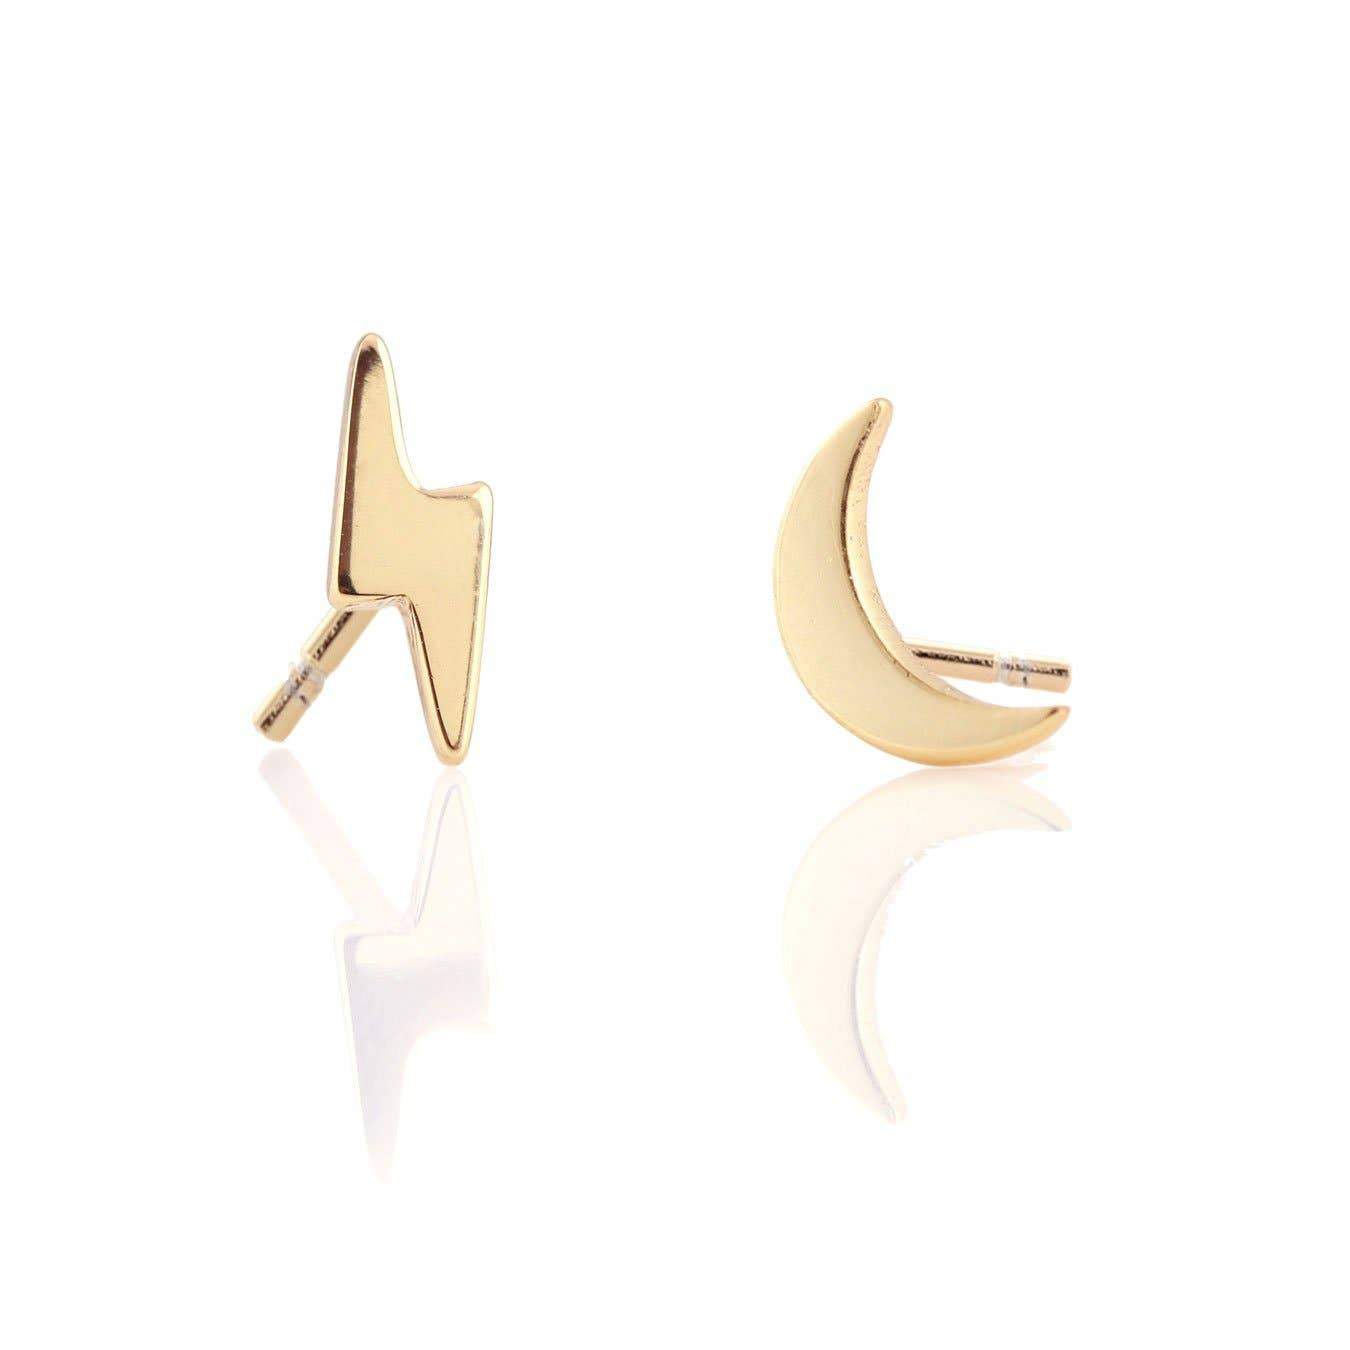 Moon & Lightening Stud Earrings Earrings Kris Nations Gold Vermeil 